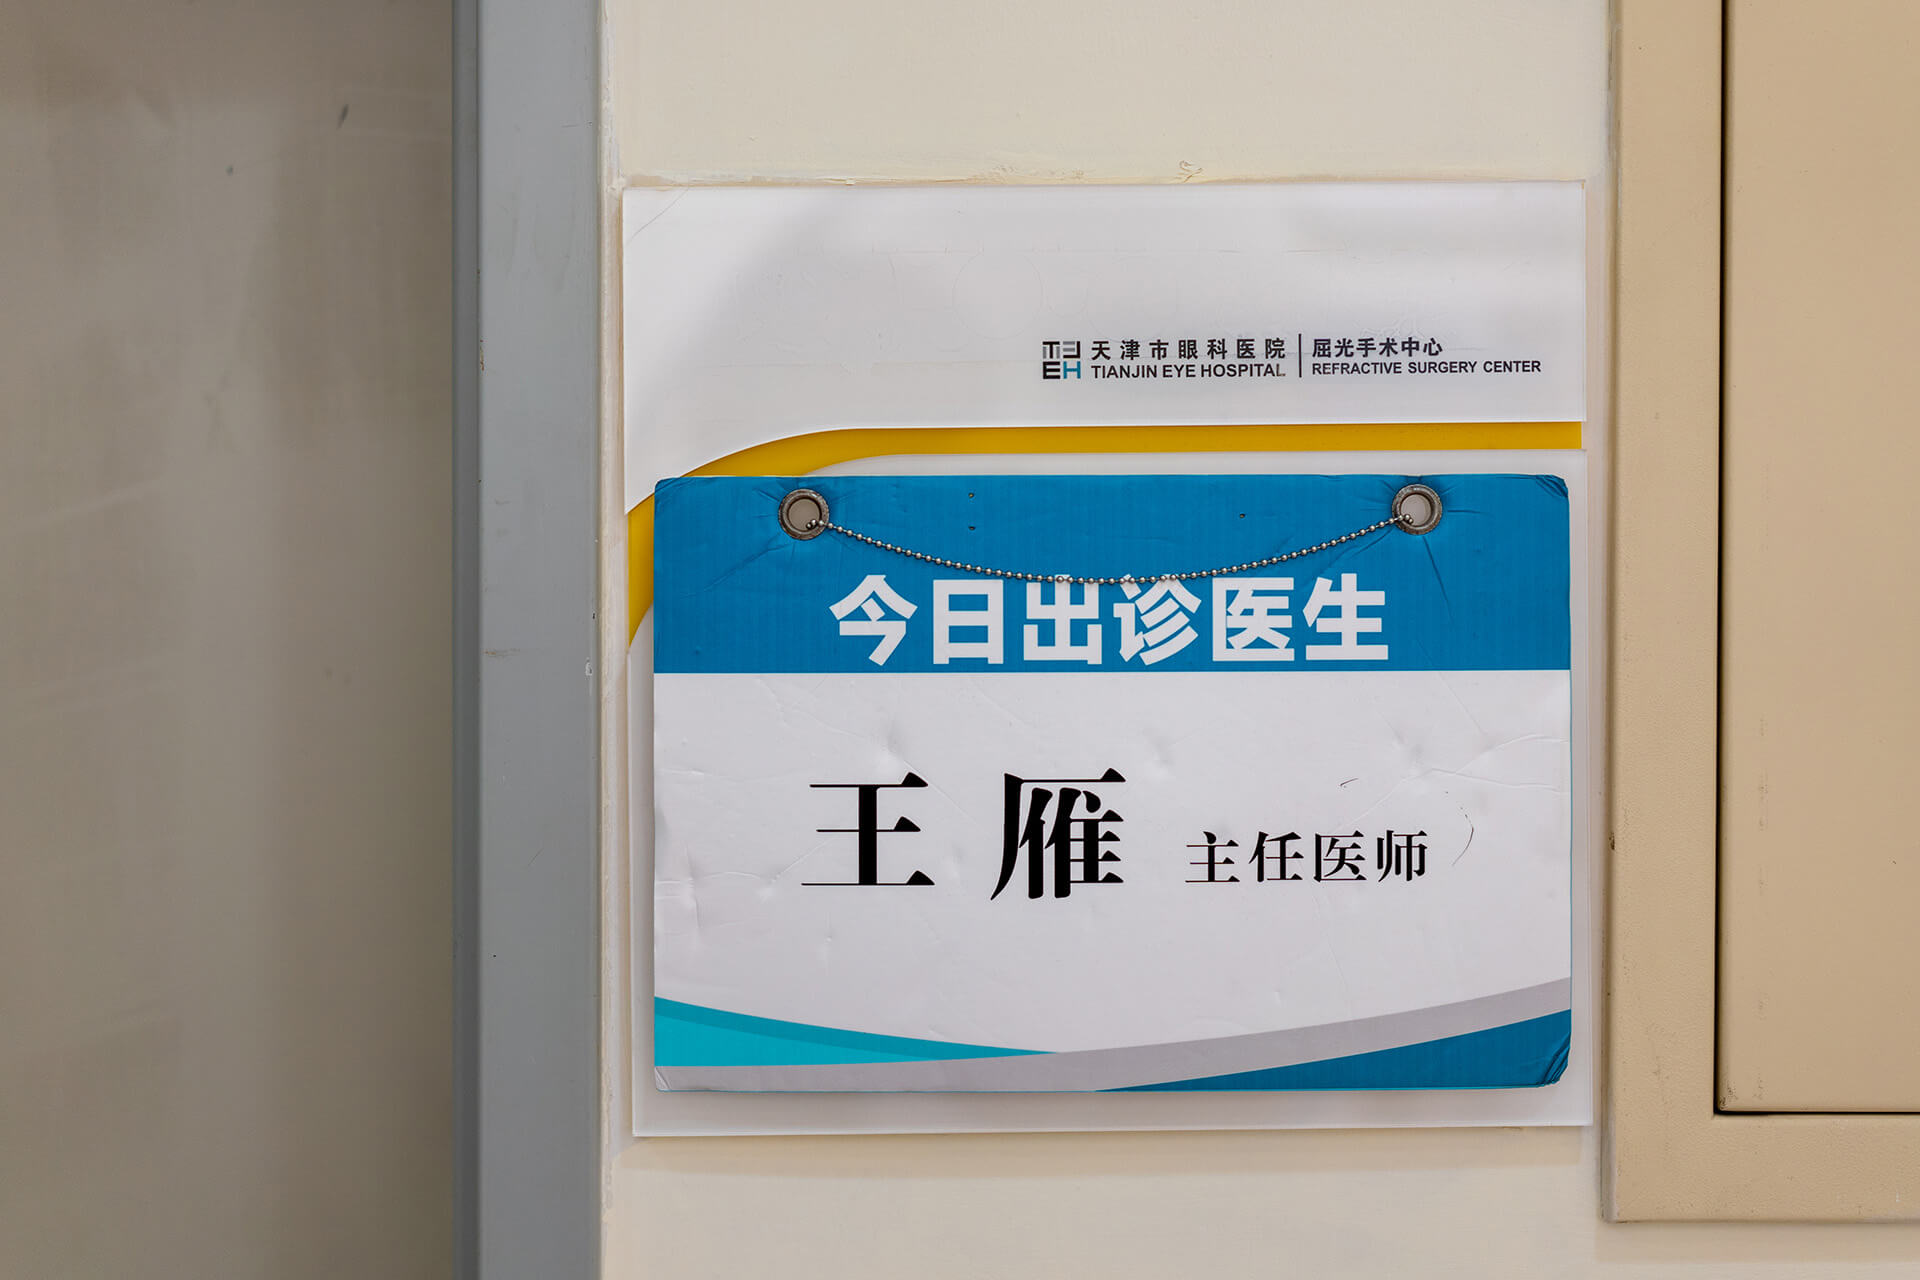 Das Namensschild von Prof. Wang Yan an der Tür